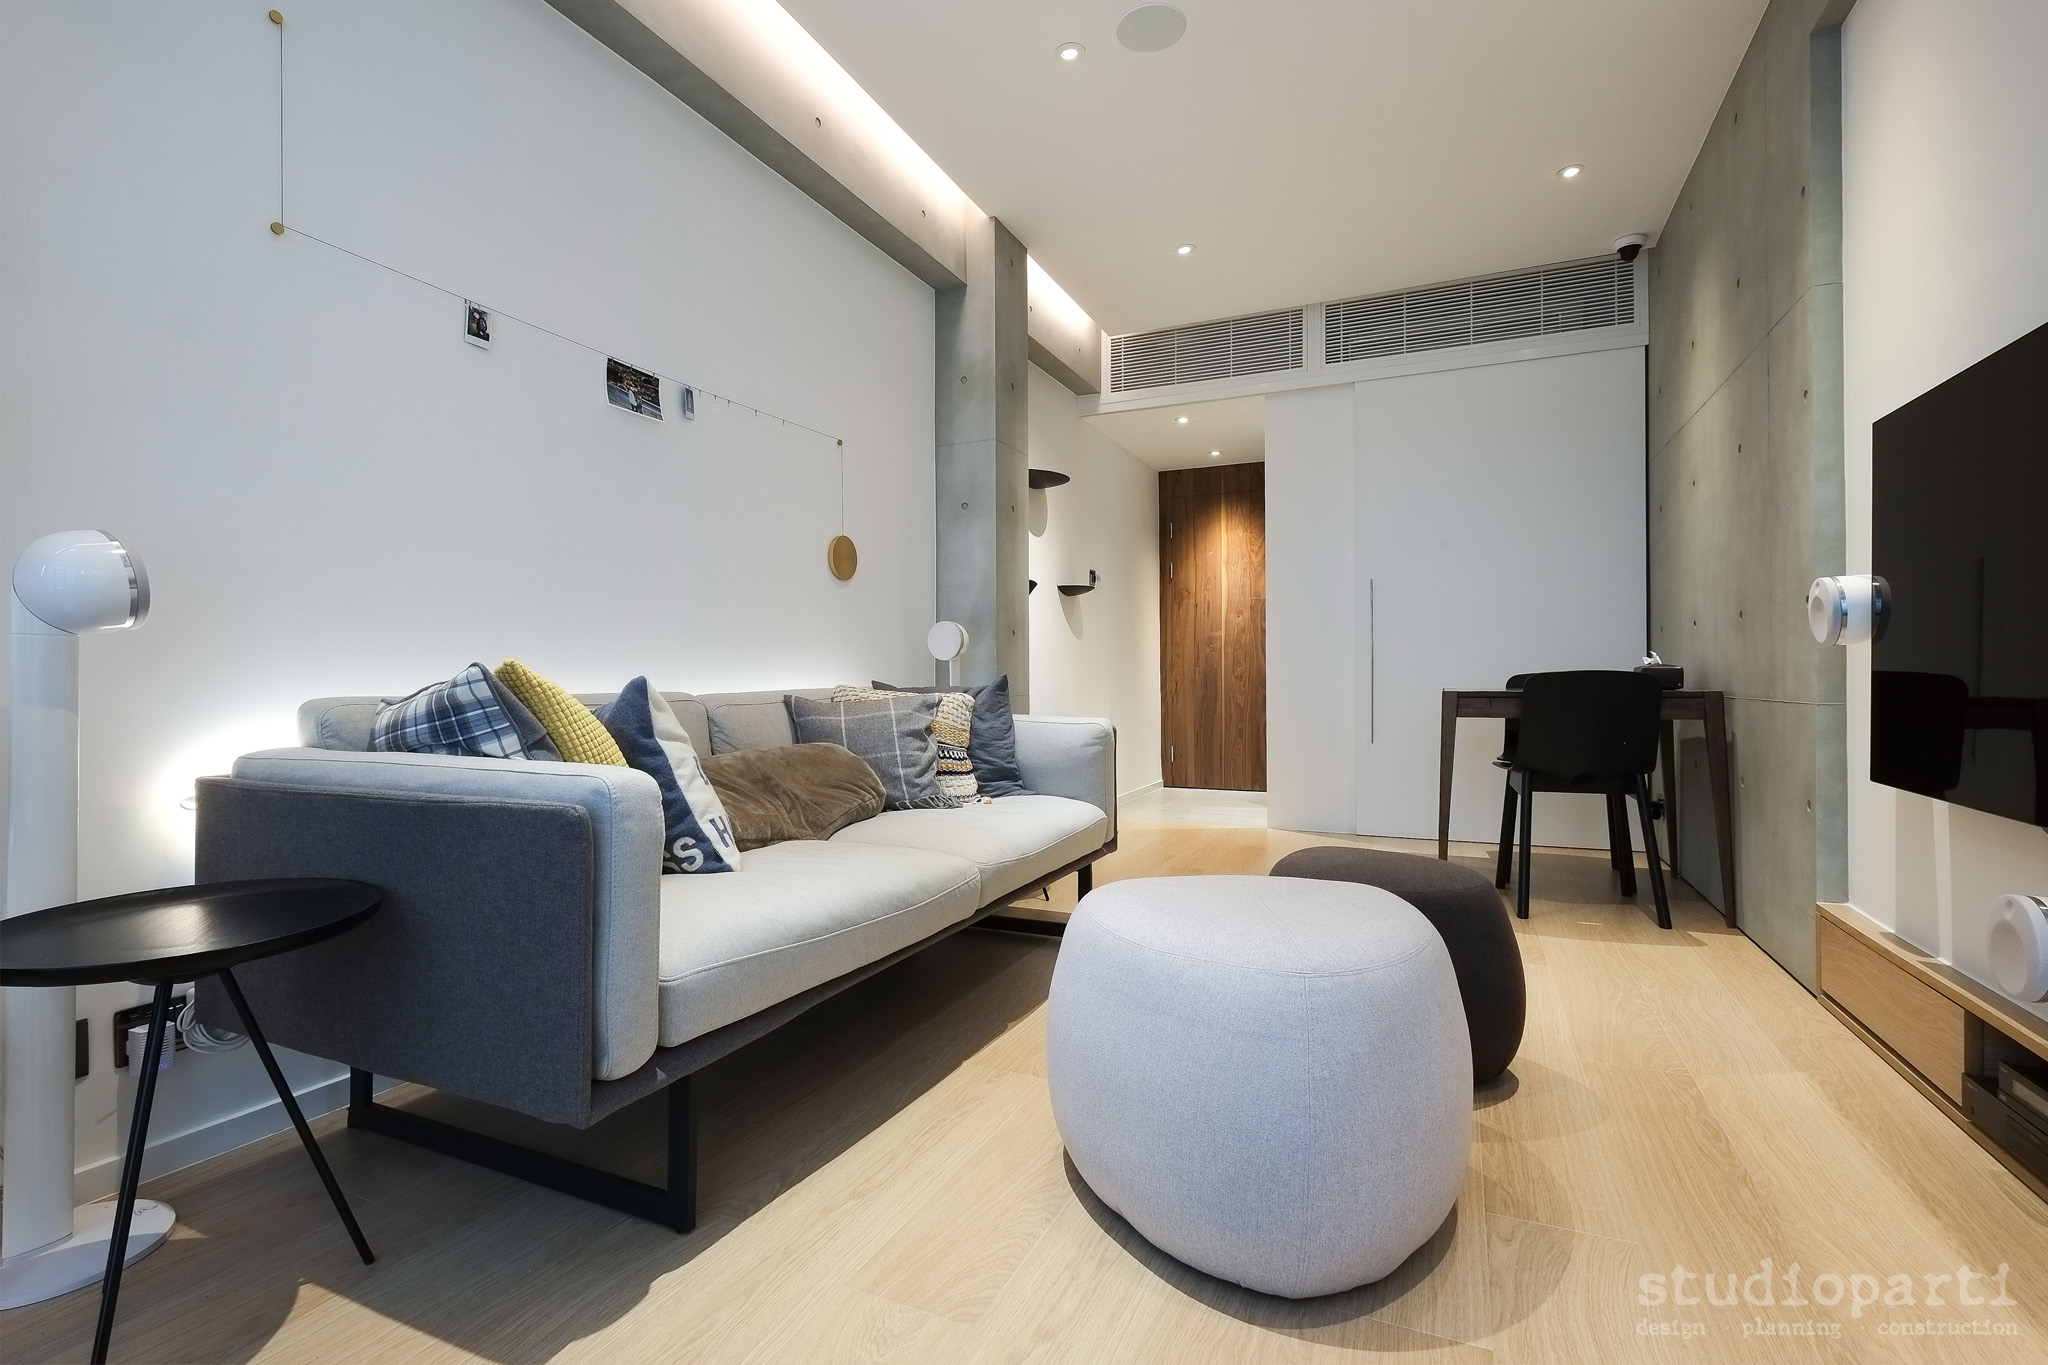 地板用上淺色橡木，為居室注入點點溫暖感。